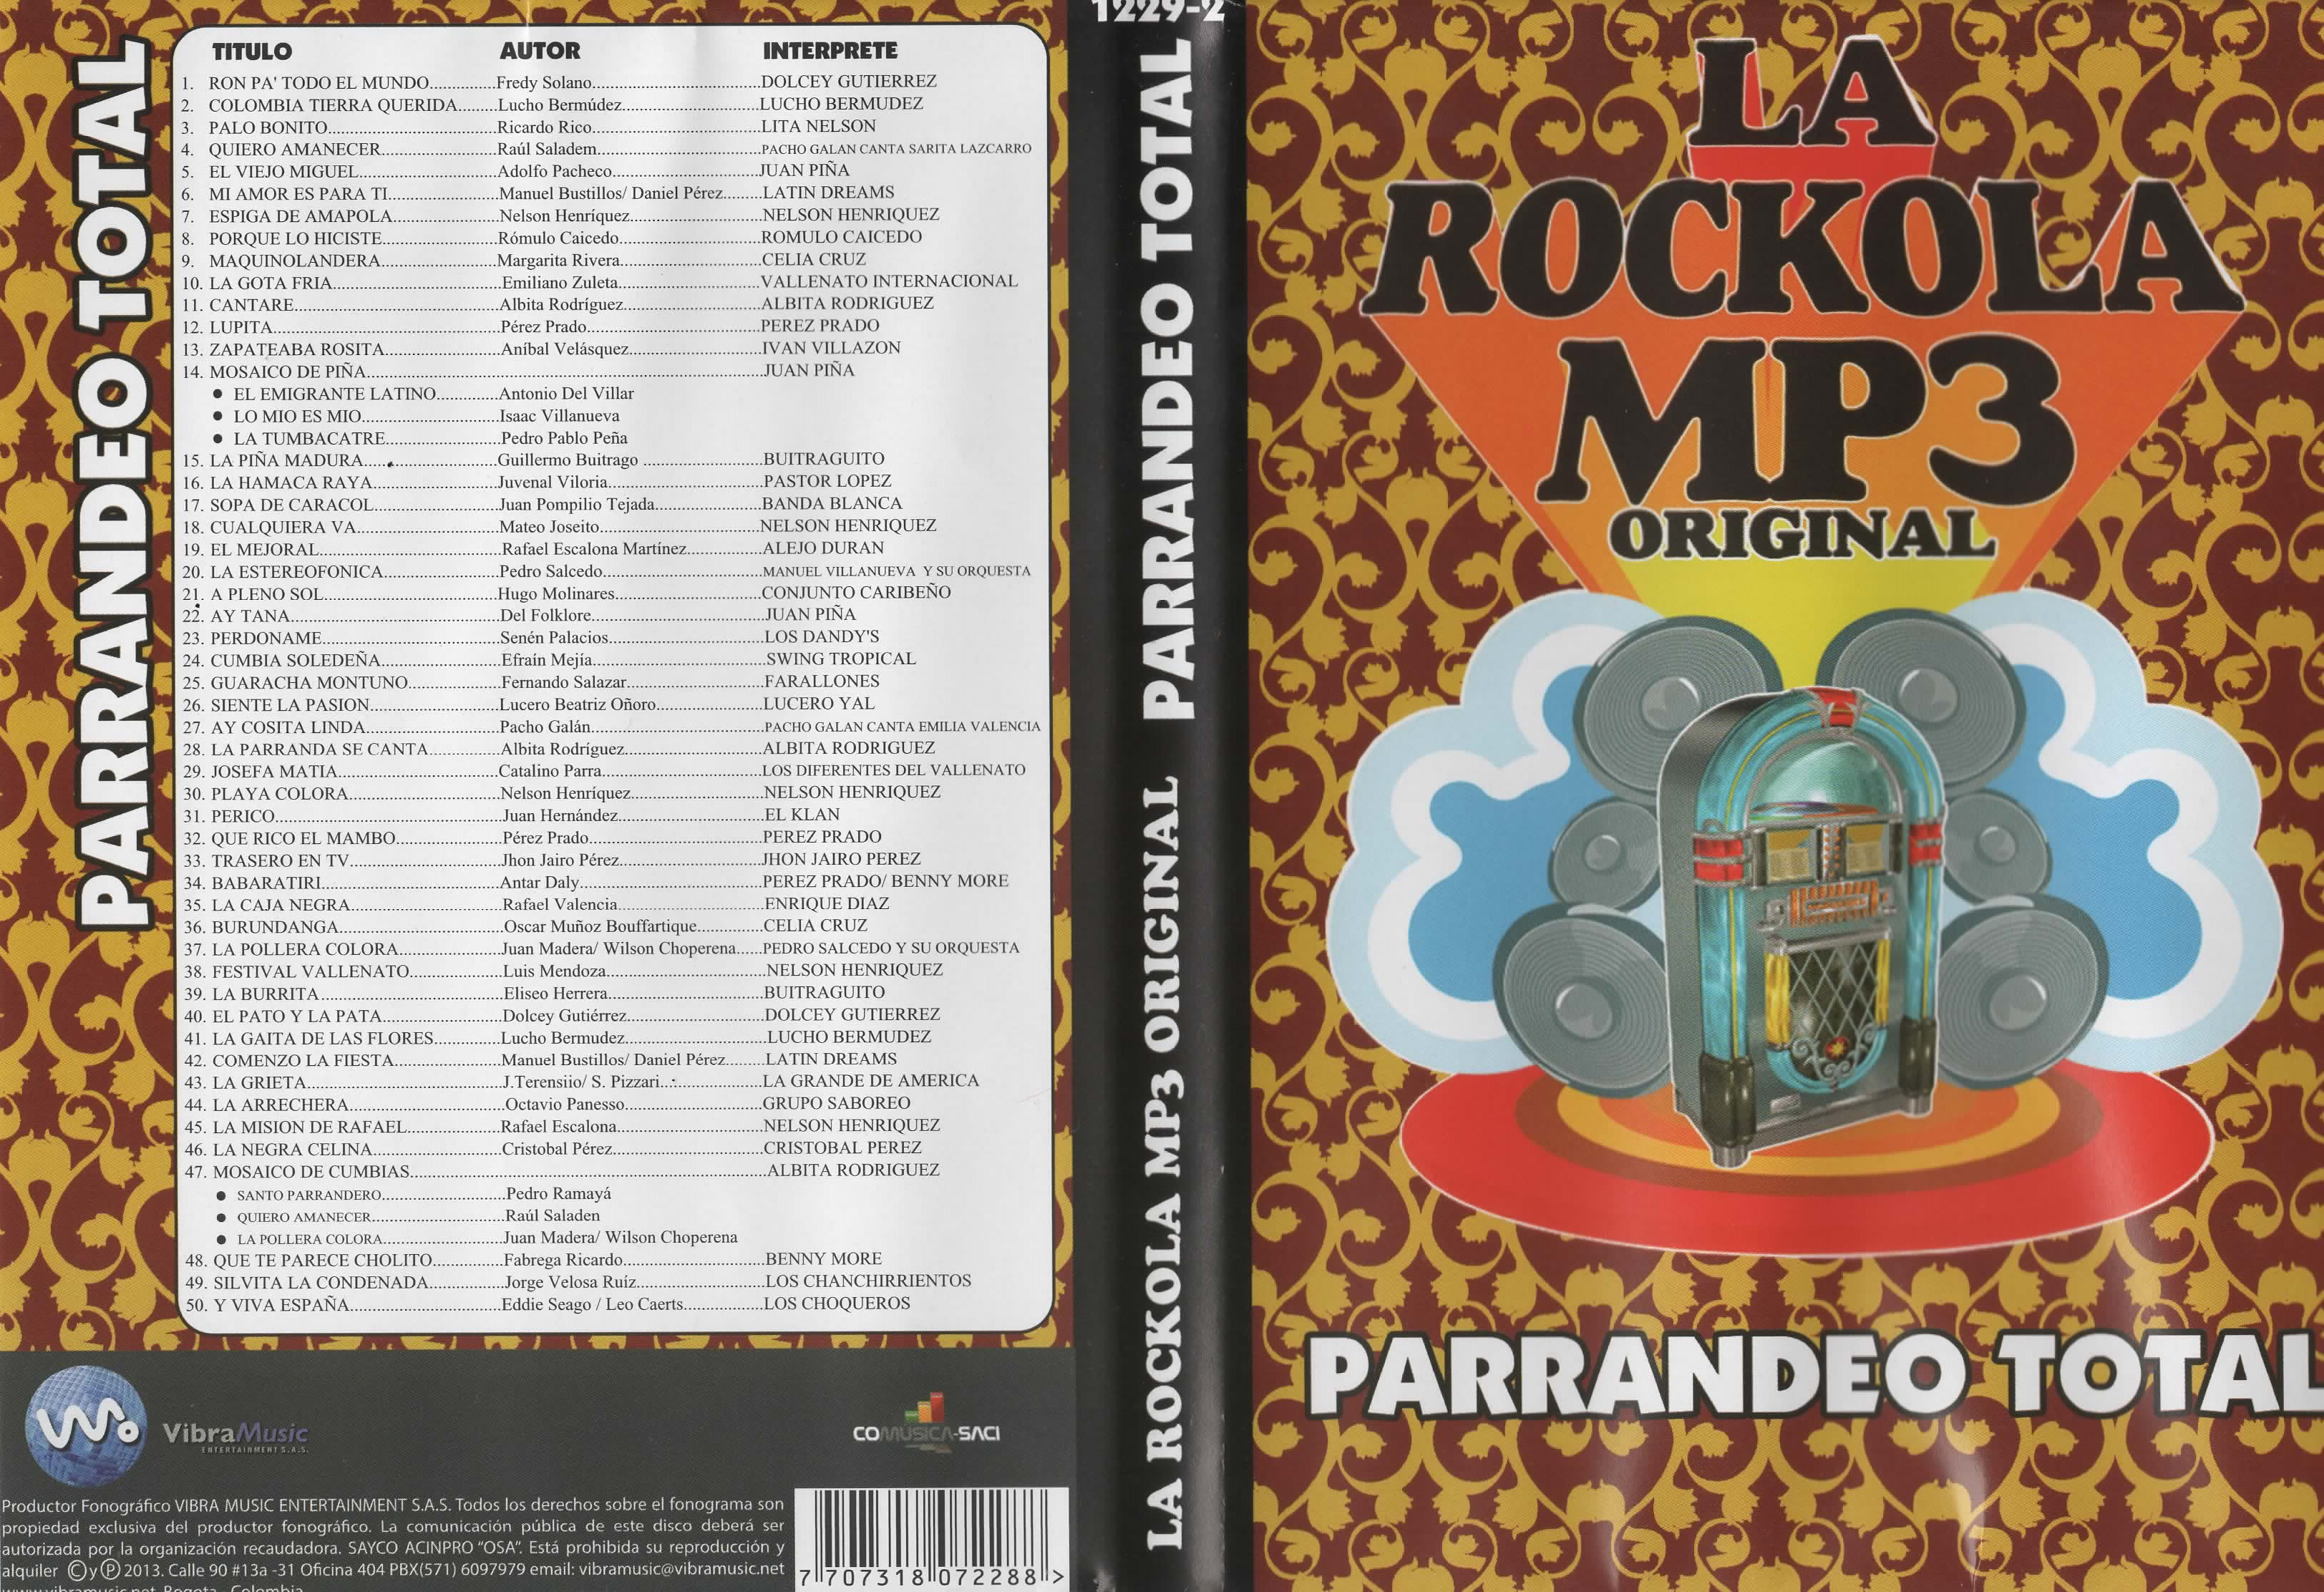 DVD La rockola mp3 original - Parrandeo total